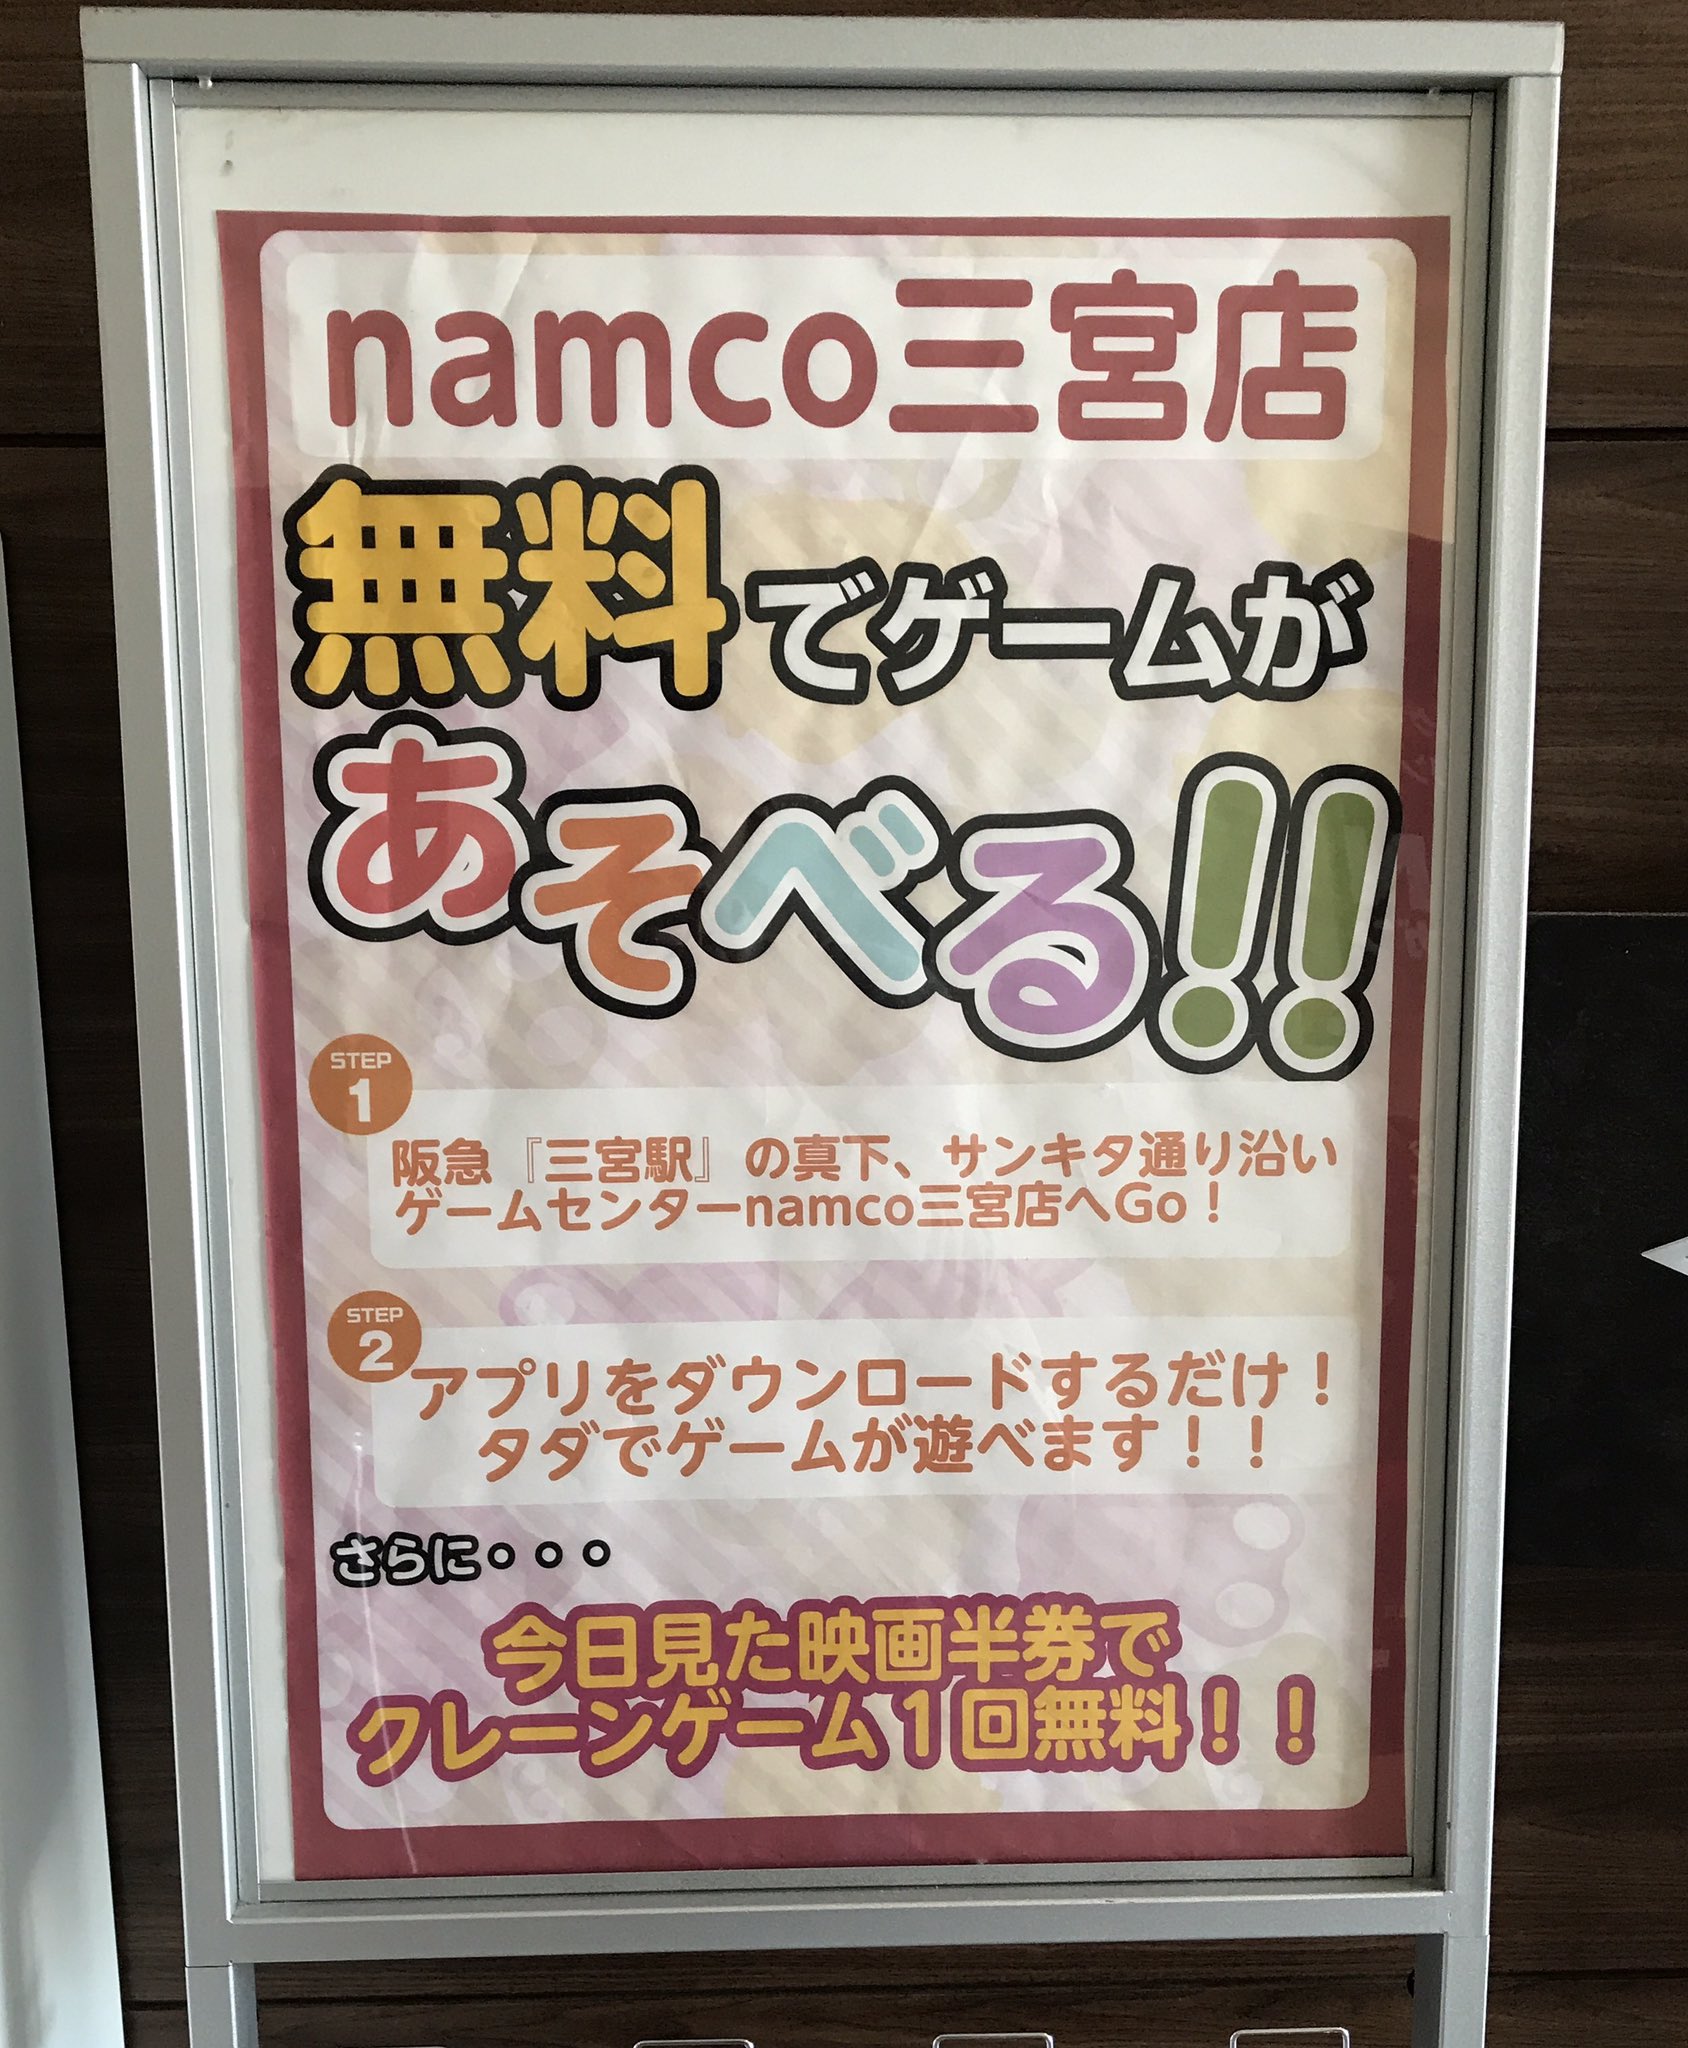 Namco三宮店 ご存知でしたか Osシネマズ ミント神戸の映画半券をお持ちいただくとクレーンゲームが1回無料でプレイできます ٩ W و ミント神戸で映画を観た後にはぜひ三宮店へ T Co 3b5pemhb1e Twitter